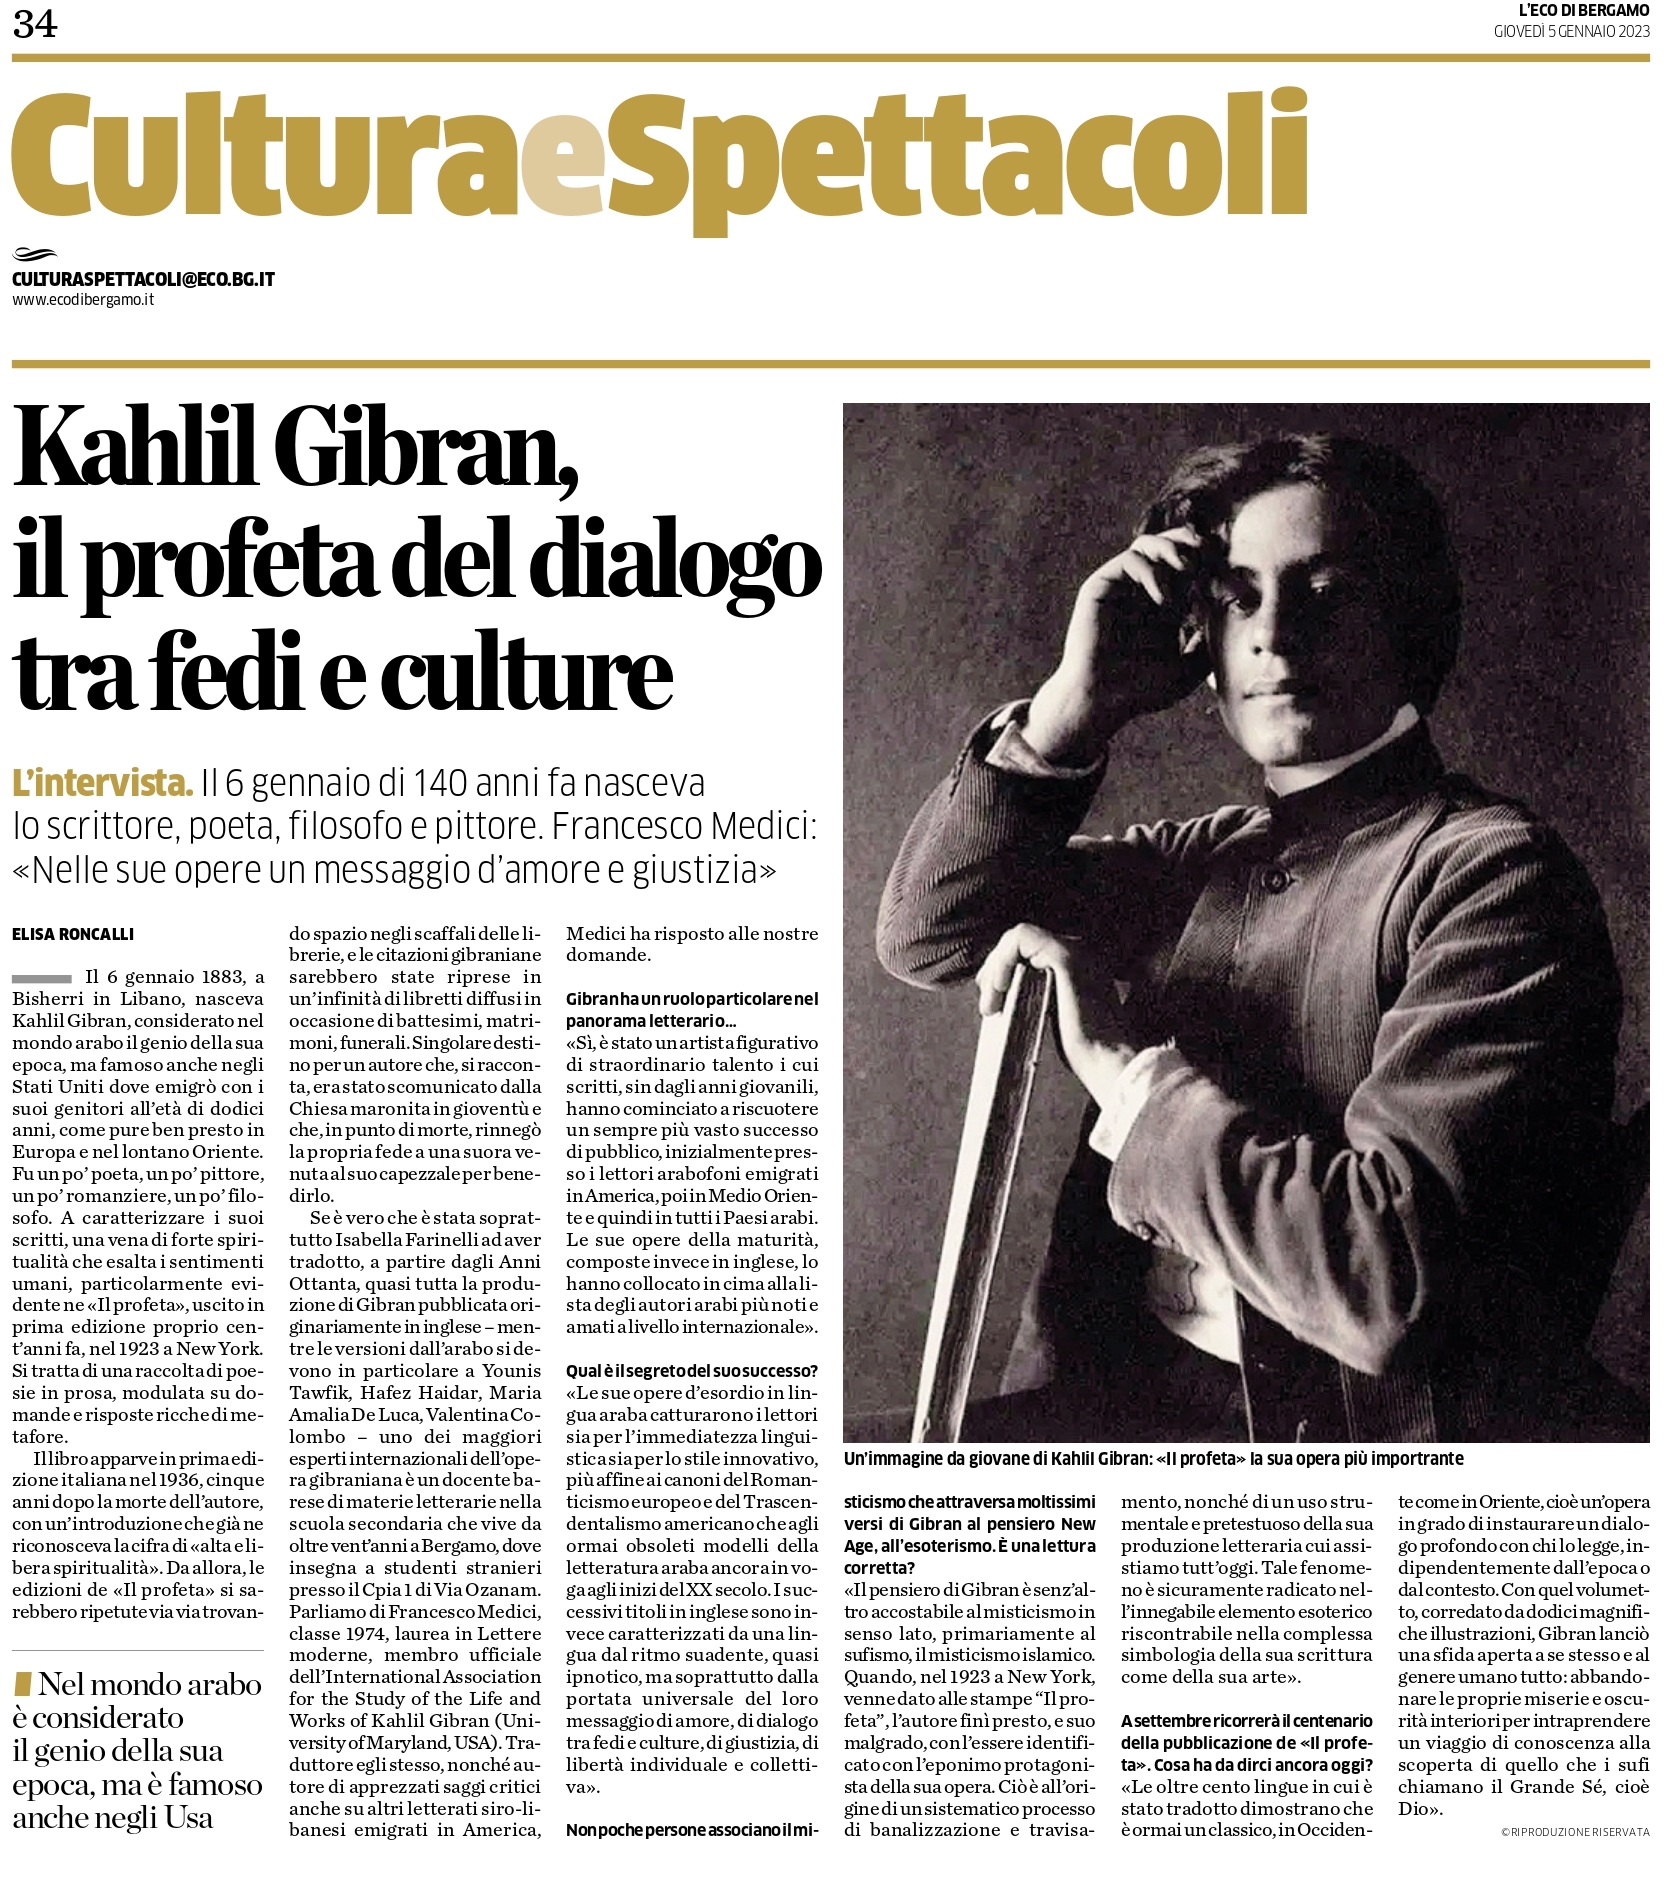 Elisa Roncalli, "Kahlil Gibran, il profeta del dialogo tra fedi e culture: Intervista a Francesco Medici", L’Eco di Bergamo, Giovedì 5 Gennaio 2023, p. 34.